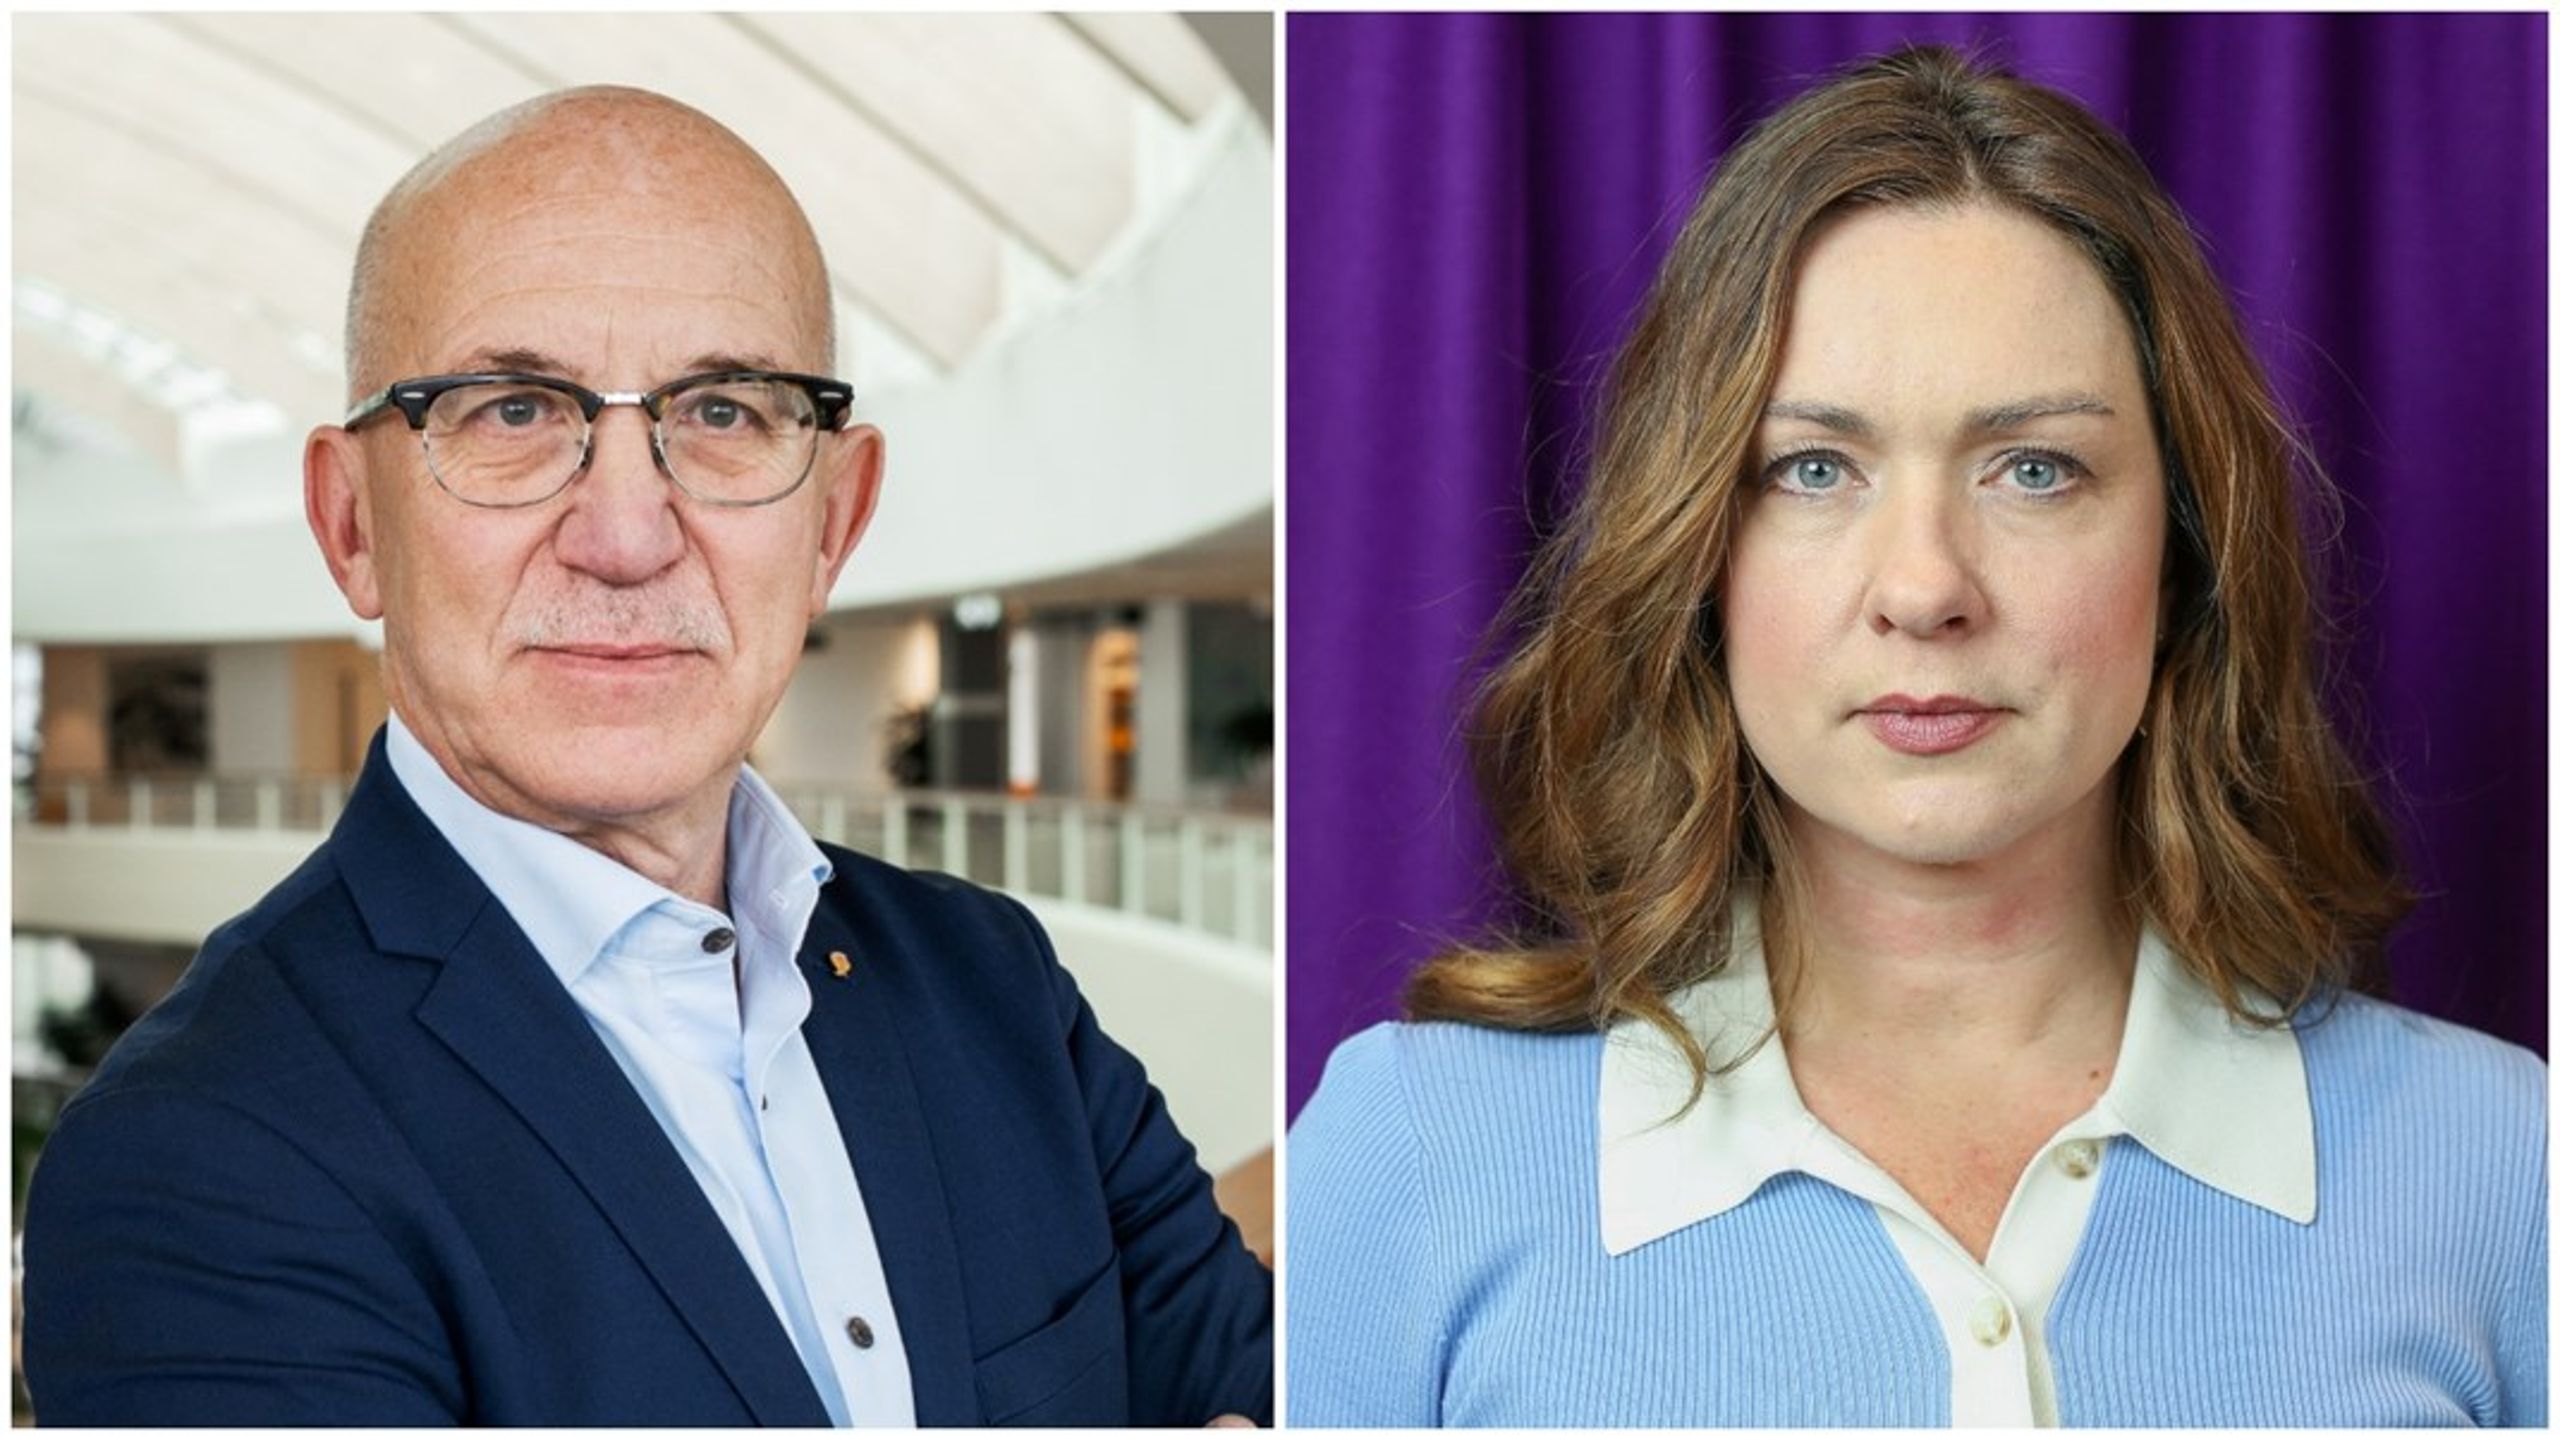 SKR:s ordförande Anders Henriksson (S) välkomnar pengarna, medan Visions ordförande Veronica Magnusson tycker att regeringen tänker fel.